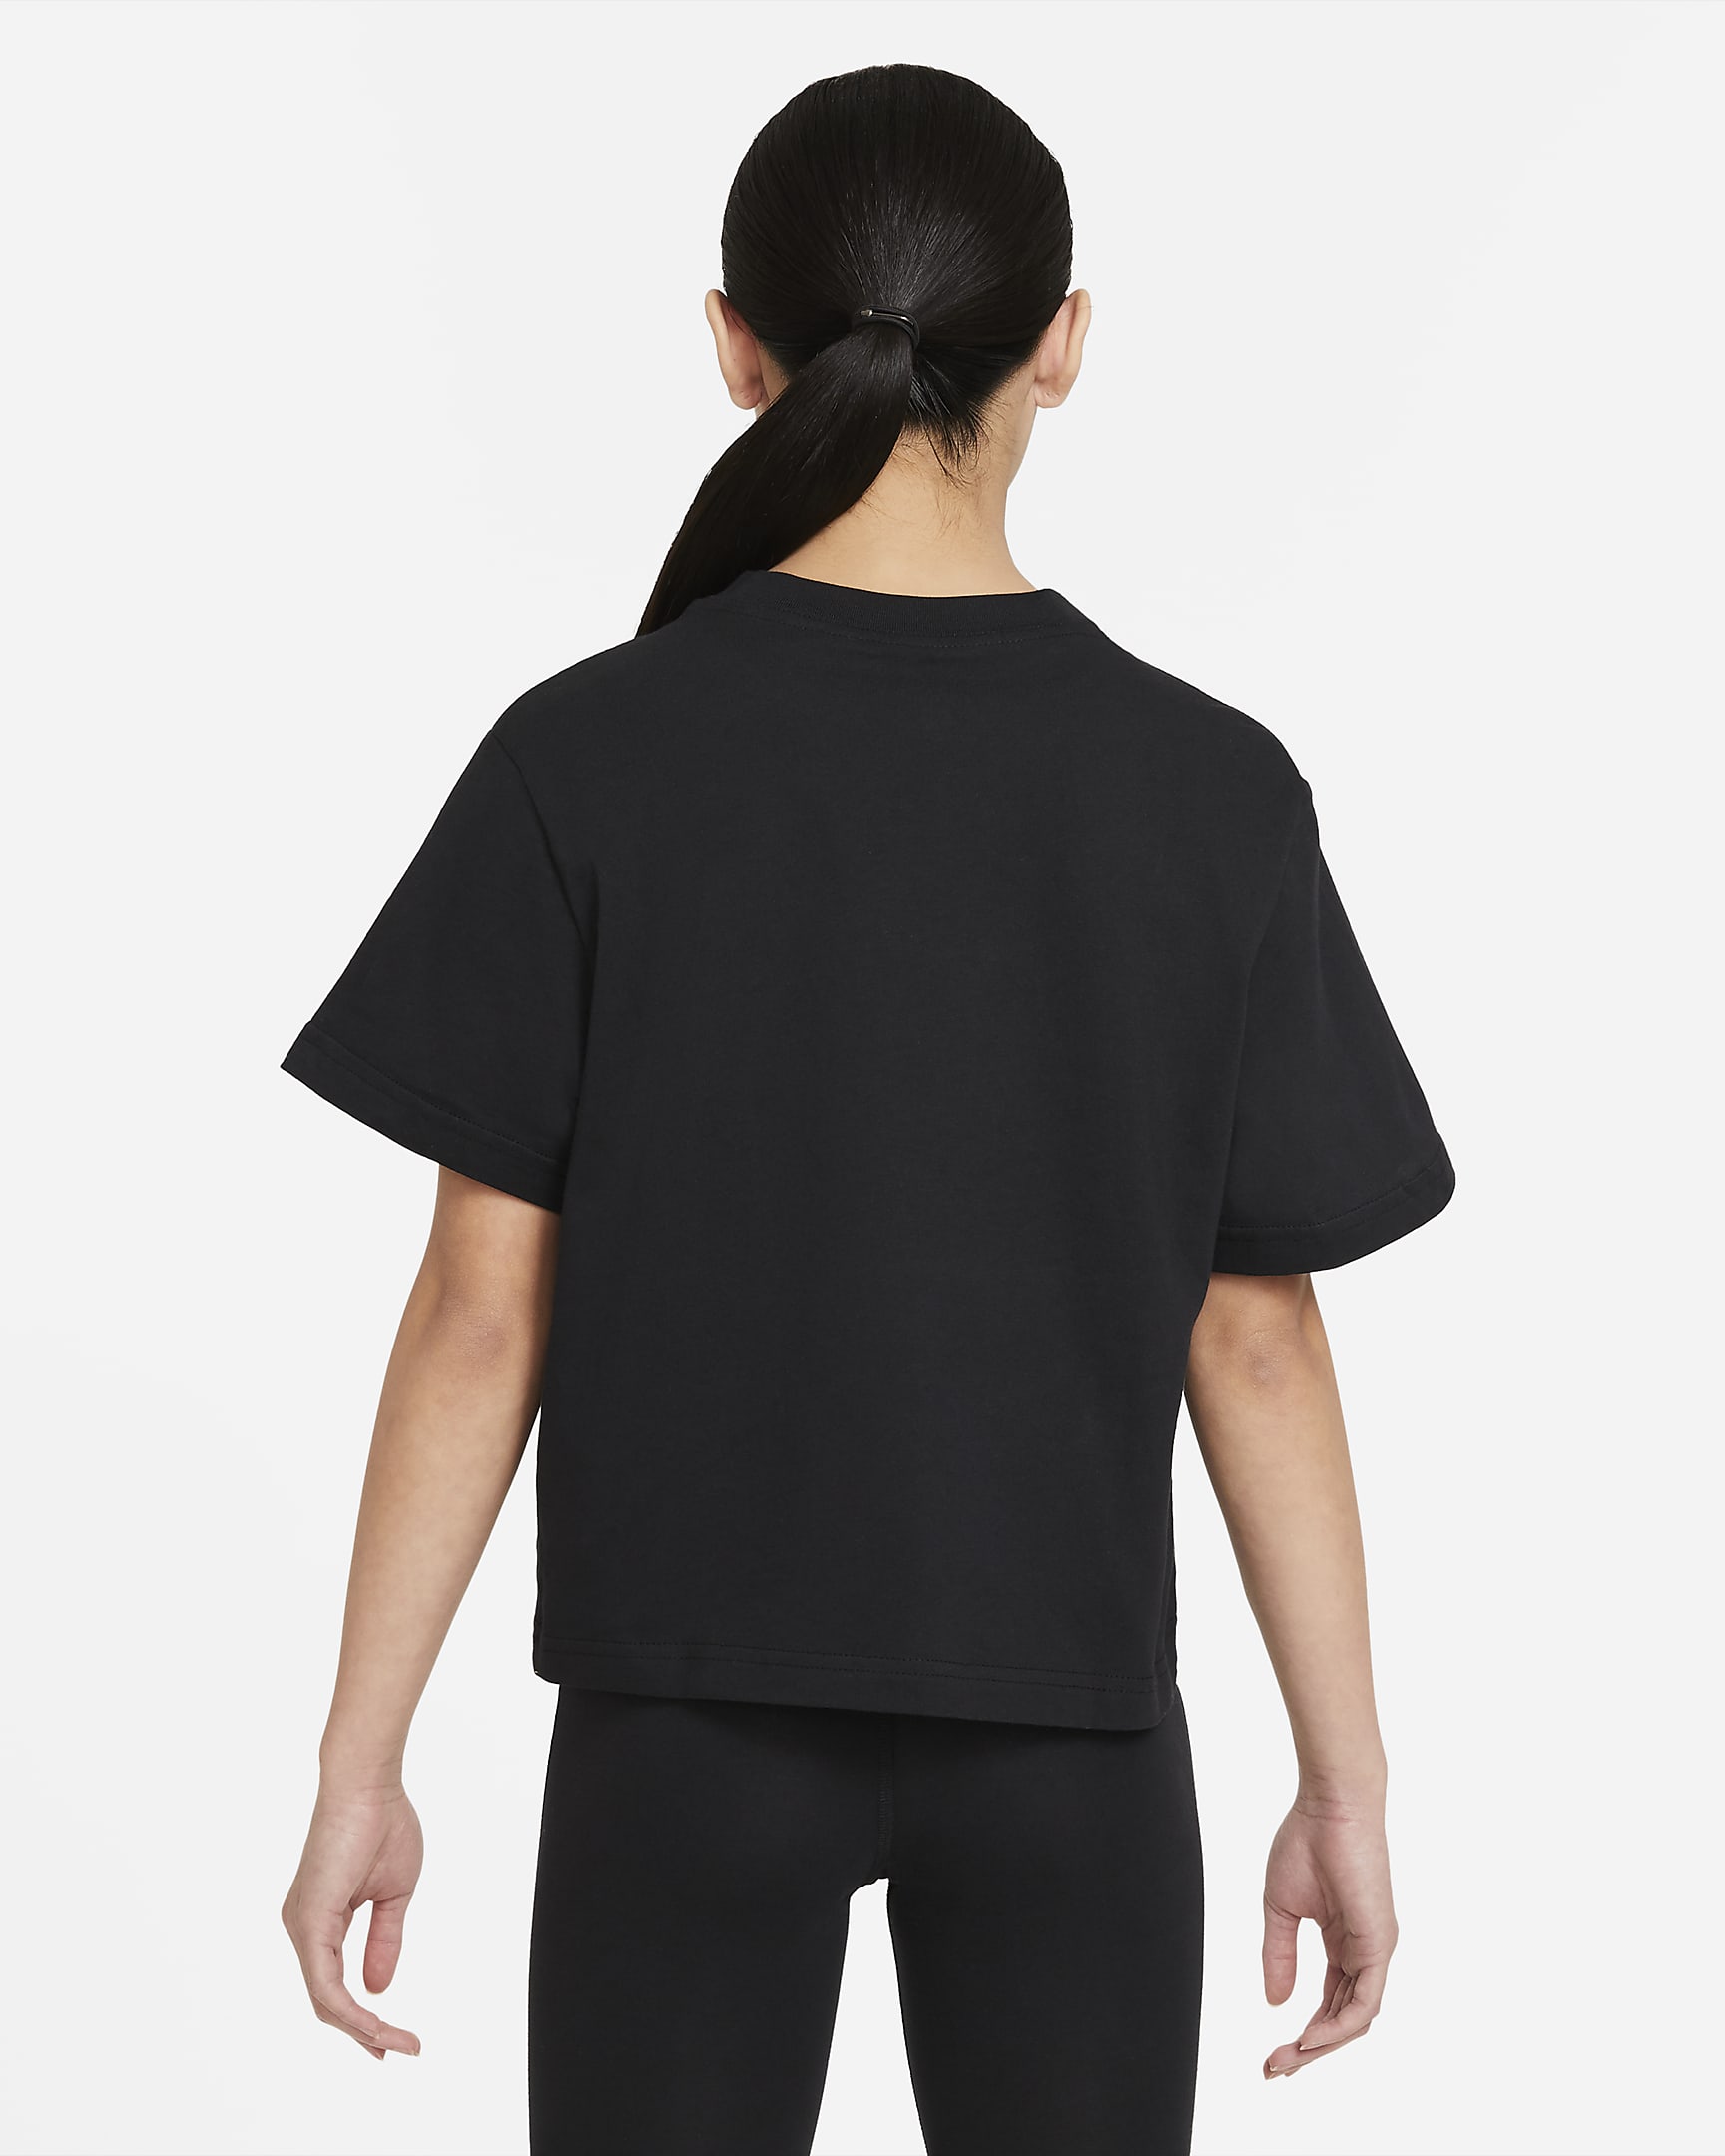 Nike Sportswear T-Shirt für ältere Kinder (Mädchen) - Schwarz/Weiß